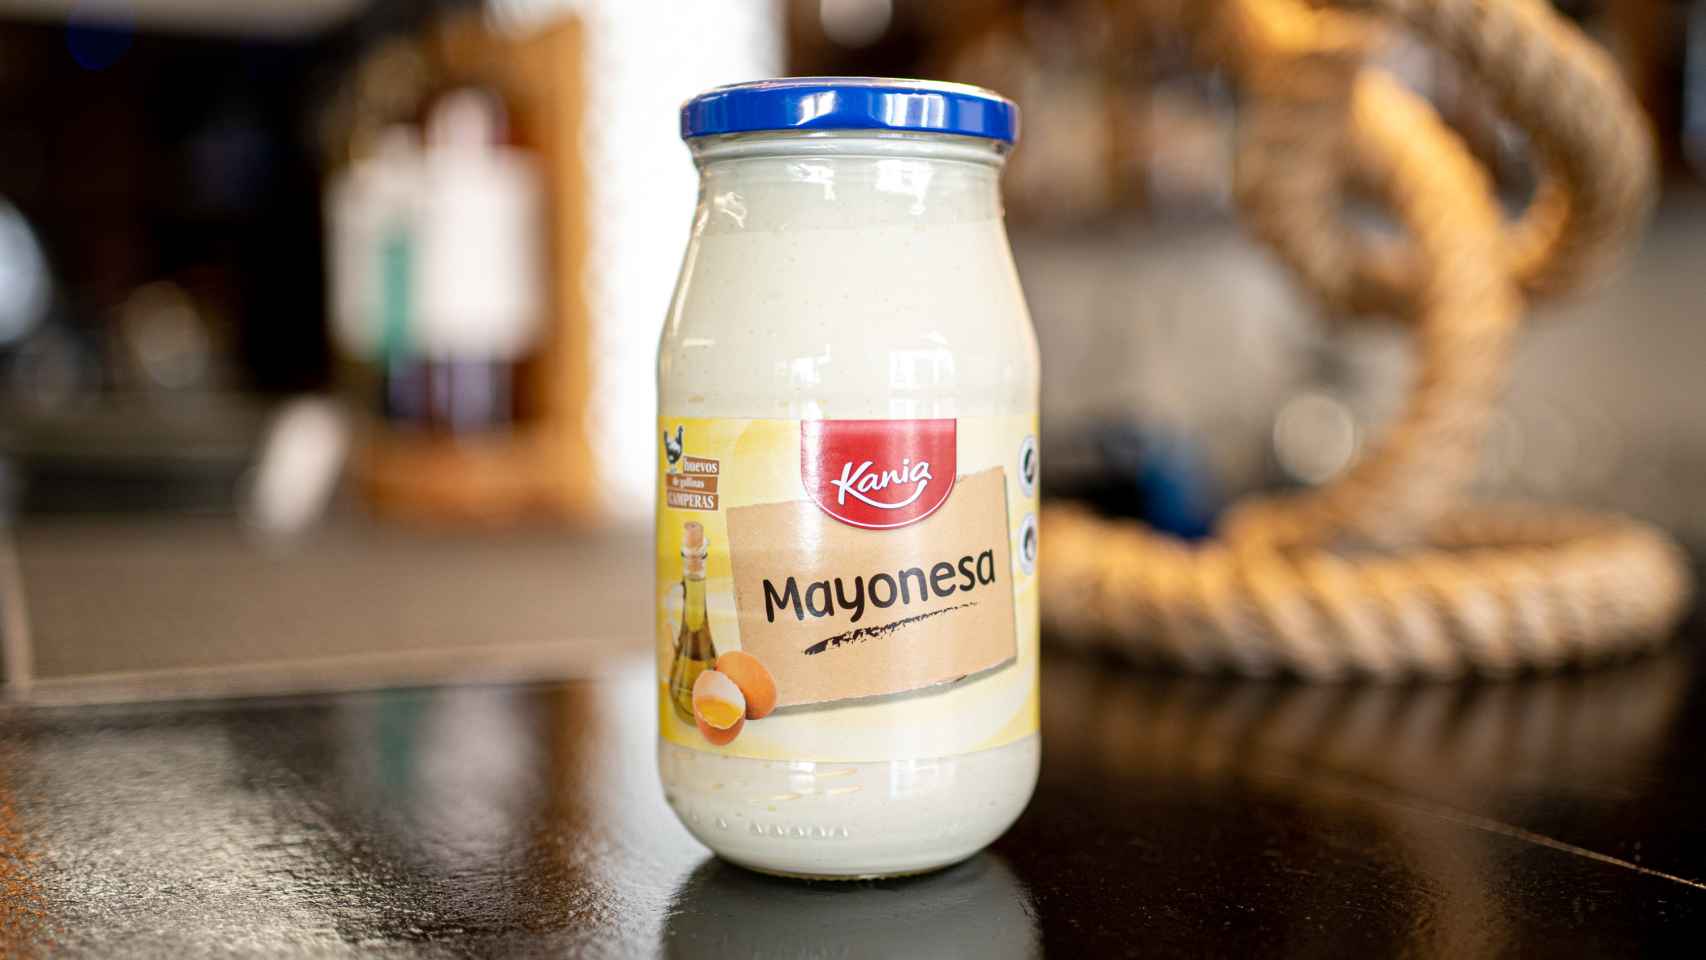 El bote de mayonesa Kania, la marca blanca de Lidl.